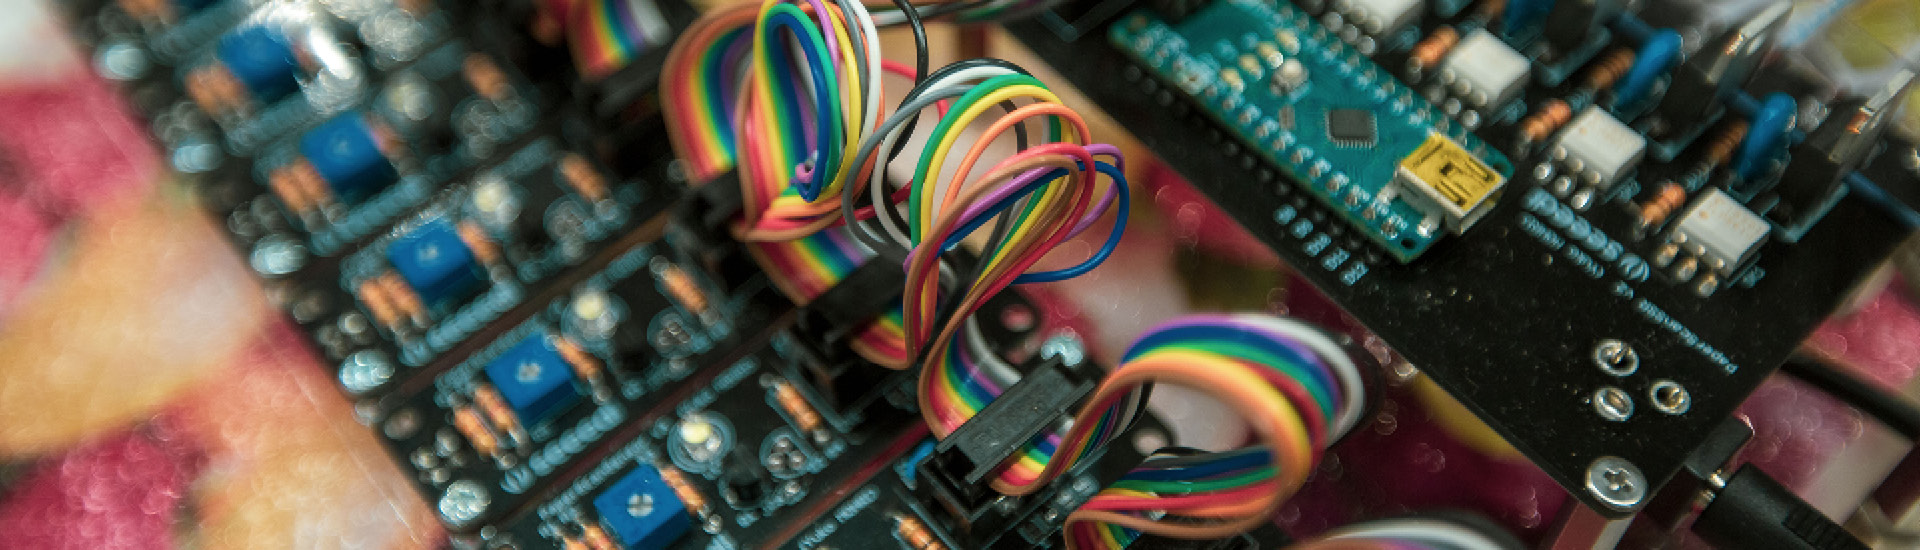 Foto de detalhe de fios coloridos e placas de programação.